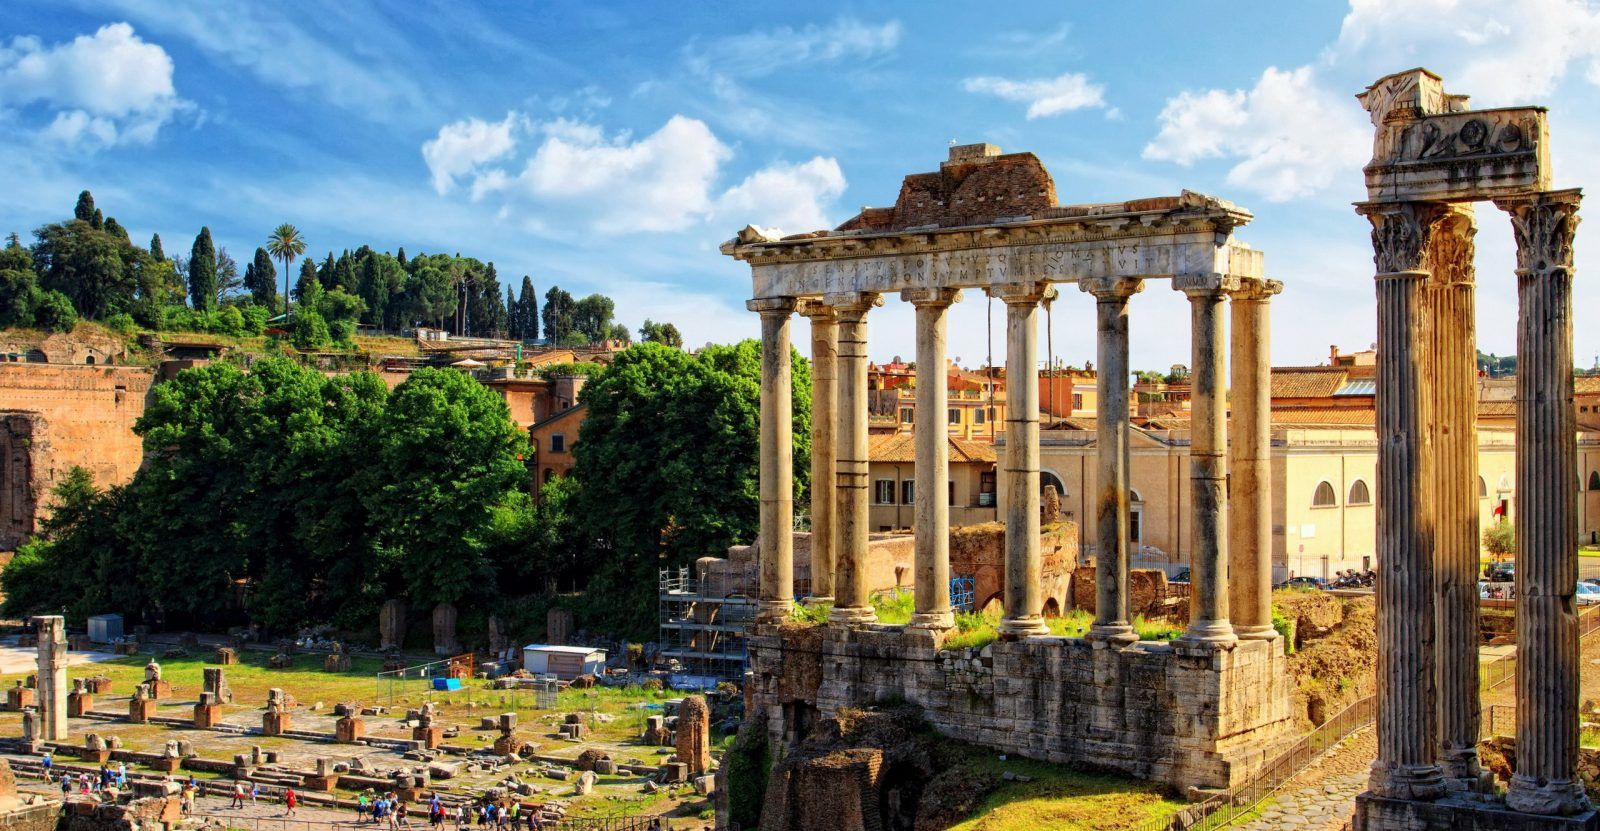 Римский Форум — Форум в центре Древнего Рима, вместе с прилегающими зданиями. Первоначально на нём размещался рынок, позже он включил в себя комиций, курию, и приобрёл политические функции…